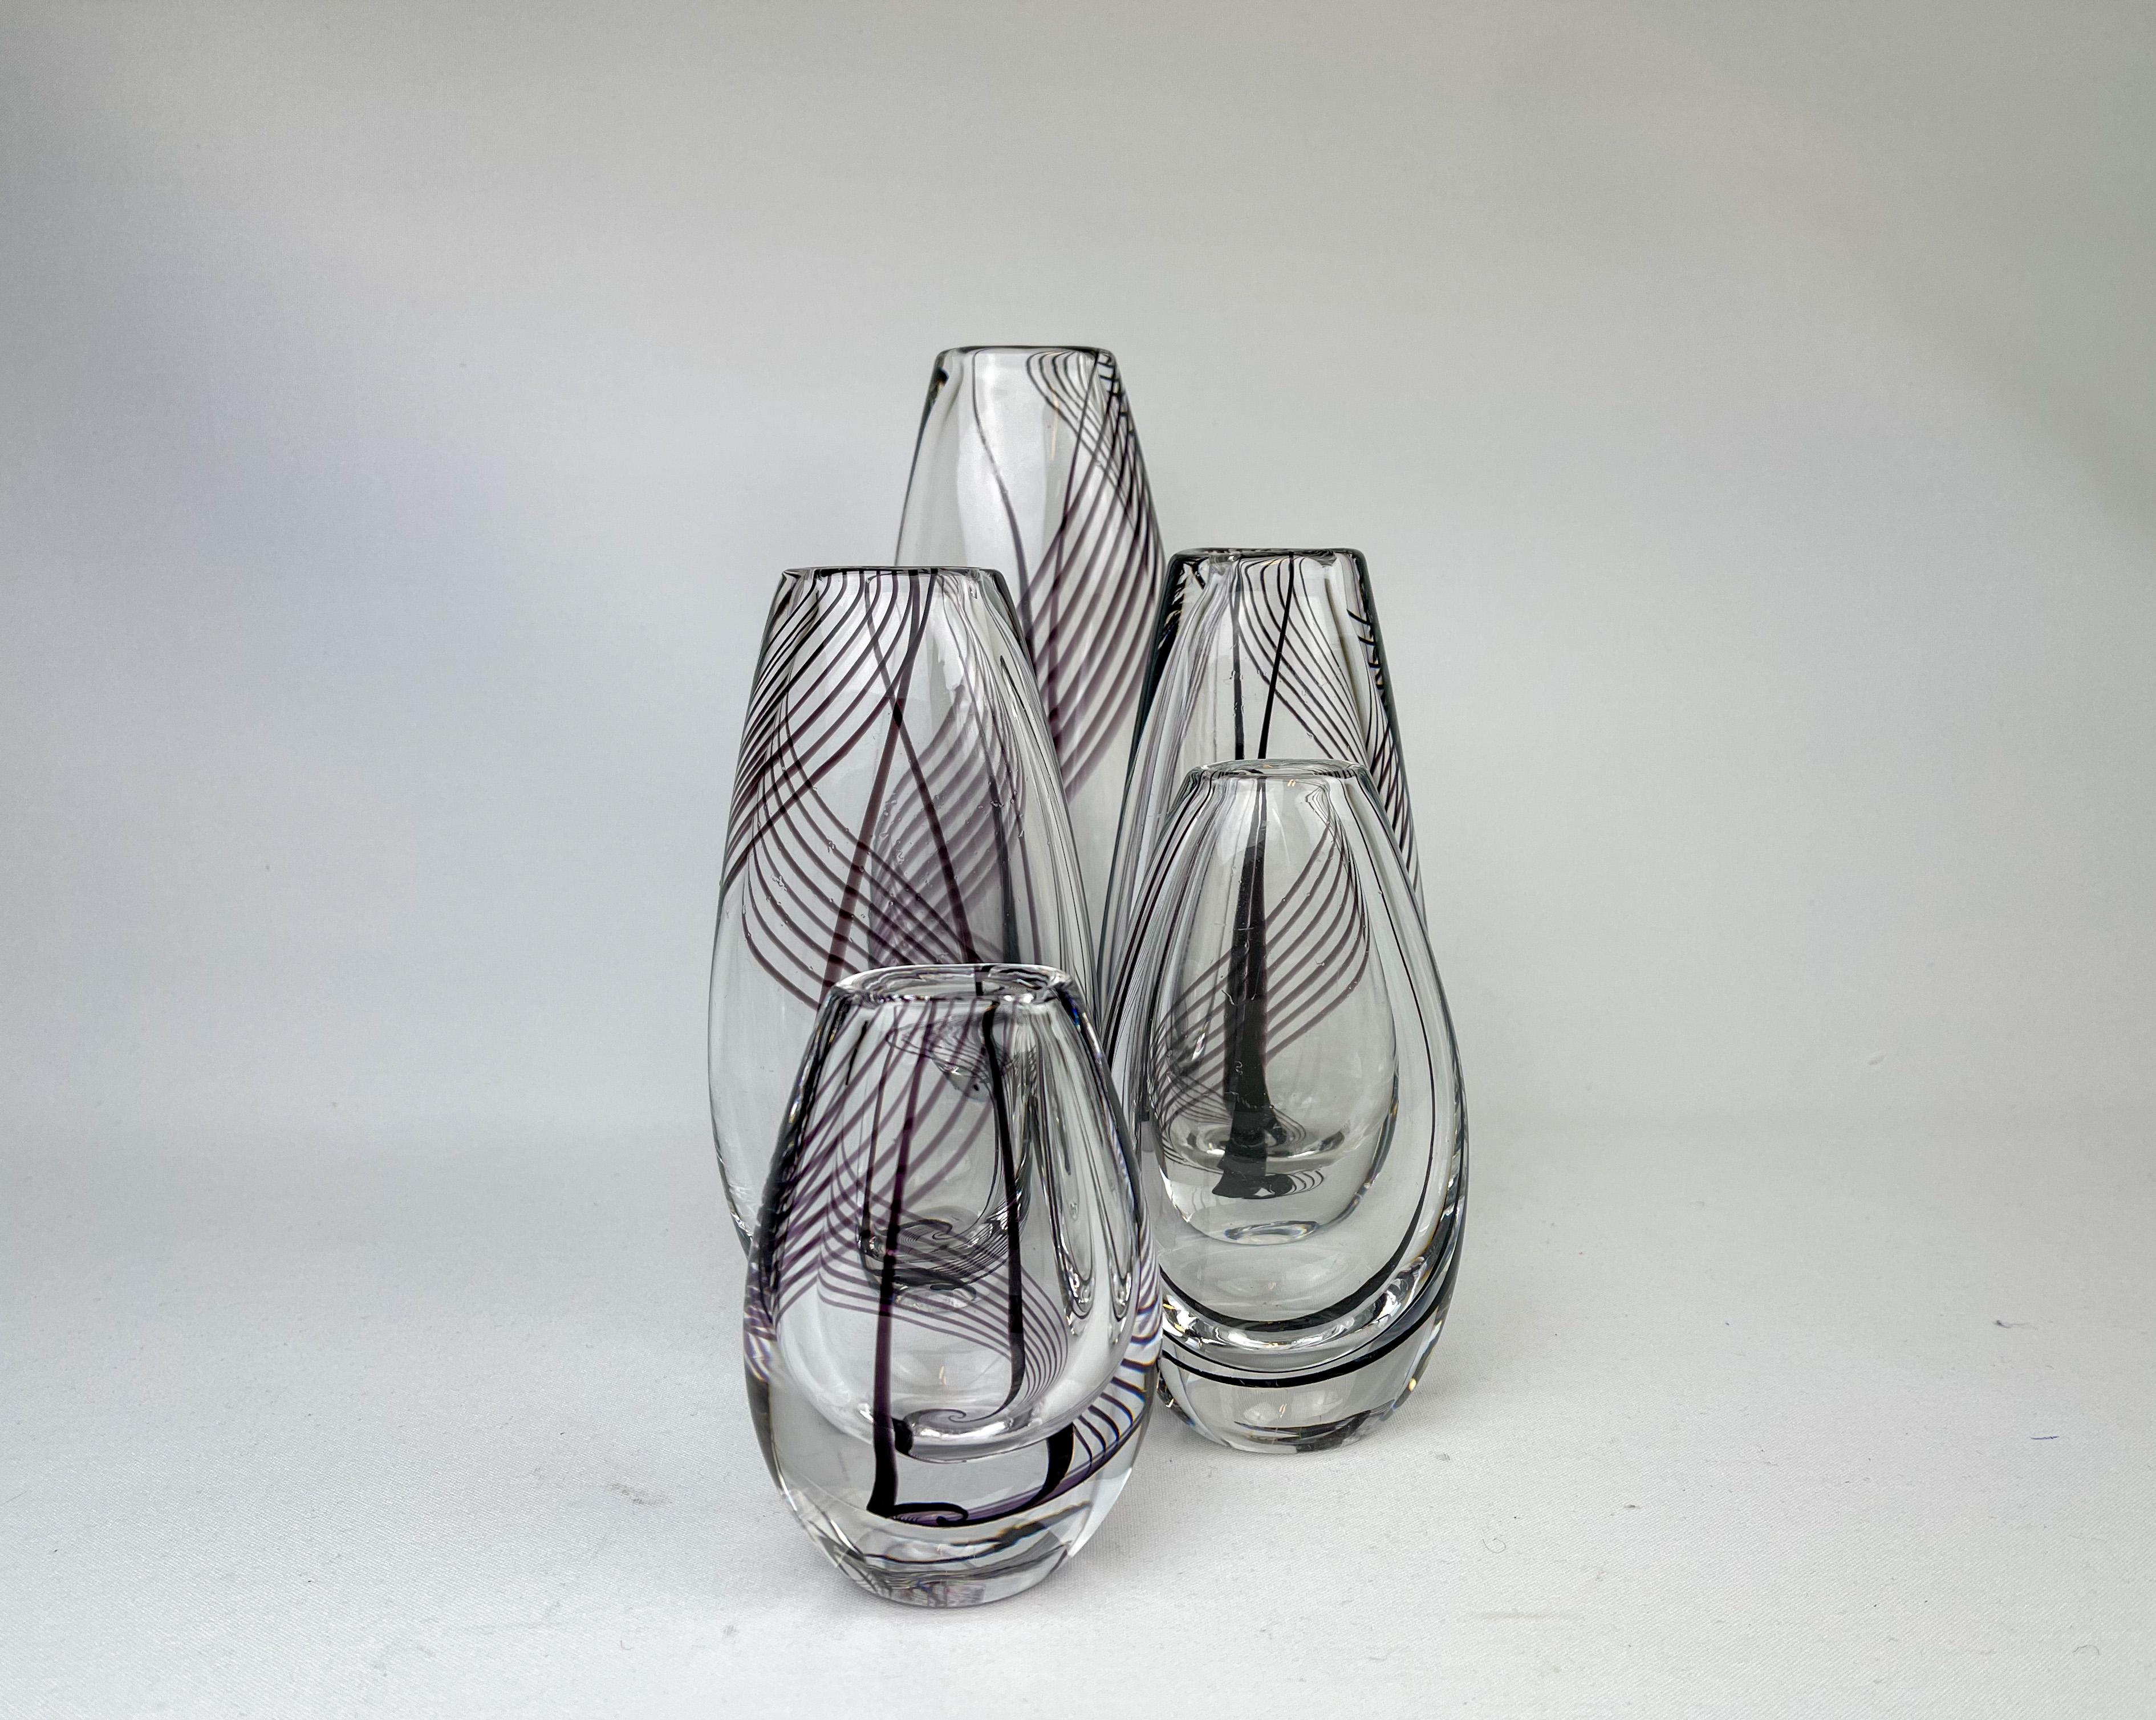 Kollektion von 5 Vasen aus Kunstglas, entworfen von Vicke Lindstrand für Kosta Sweden. Sie haben violette und schwarze Wirbellinien im Inneren des Glases. 

Schöner Zustand mit einigen Kratzern.

Dimension: 
H 23 / B 11 / T 7 cm 
H 18 / B 9 /D